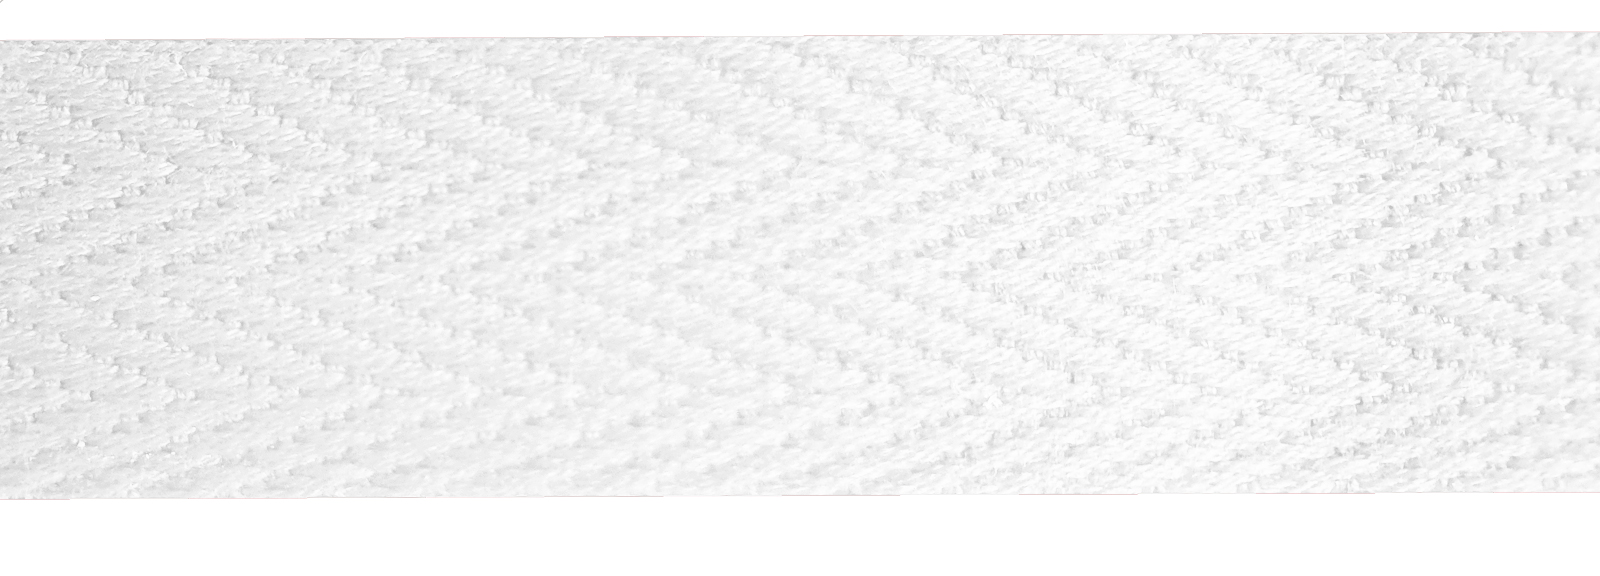 Baumwollband kräftig 15 mm weiß, Meterware, kochfest, 5% Einsprung